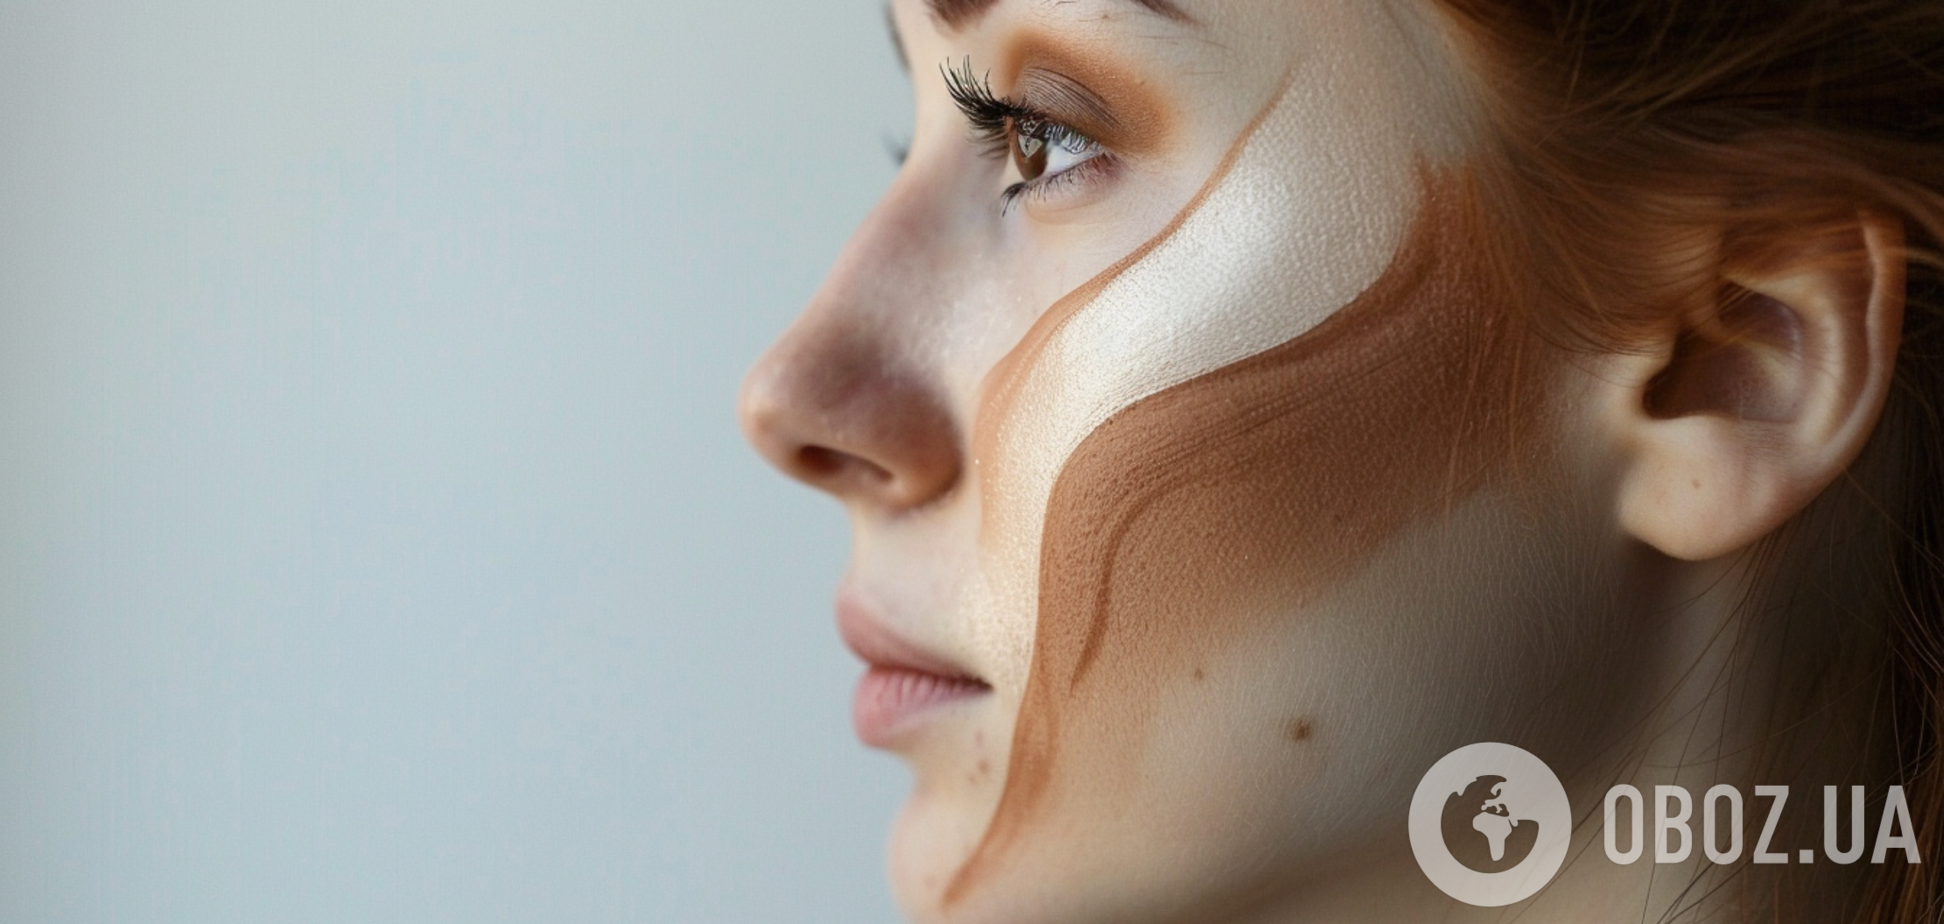 Эффект как от ринопластики: как уменьшить нос с помощью макияжа